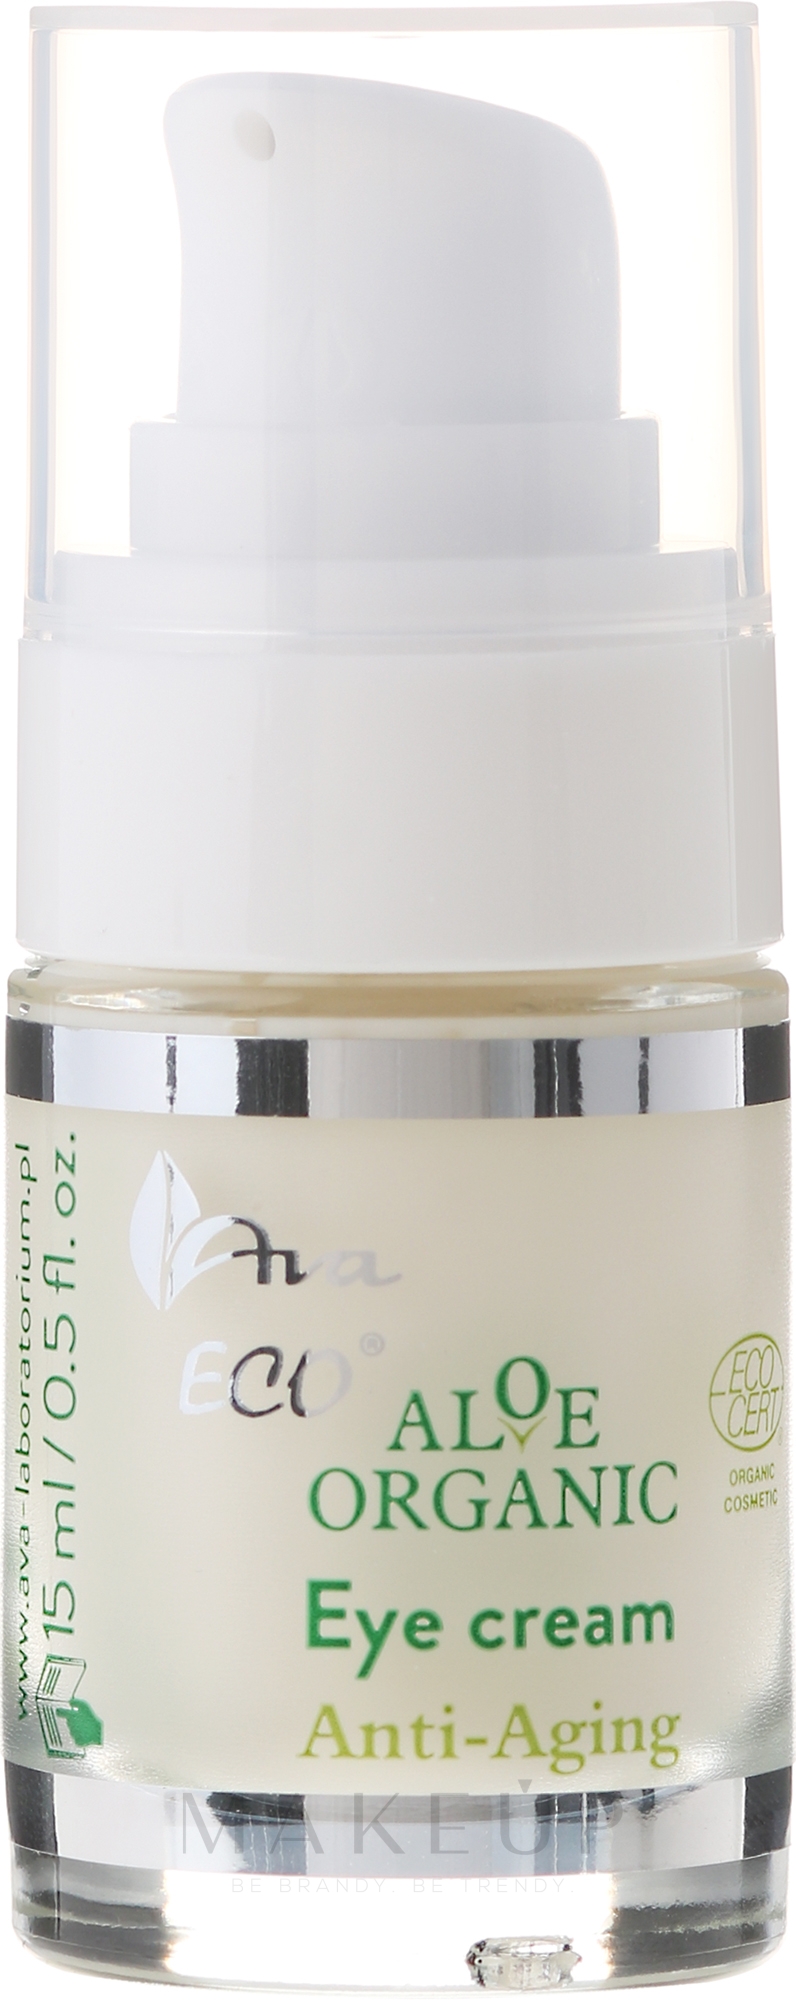 Glättende und feuchtigkeitsspendende Anti-Aging Lifting-Augenkonturcreme mit Aloe Vera und Feigenkaktus - Ava Laboratorium Aloe Organiic Eye Cream — Bild 15 ml